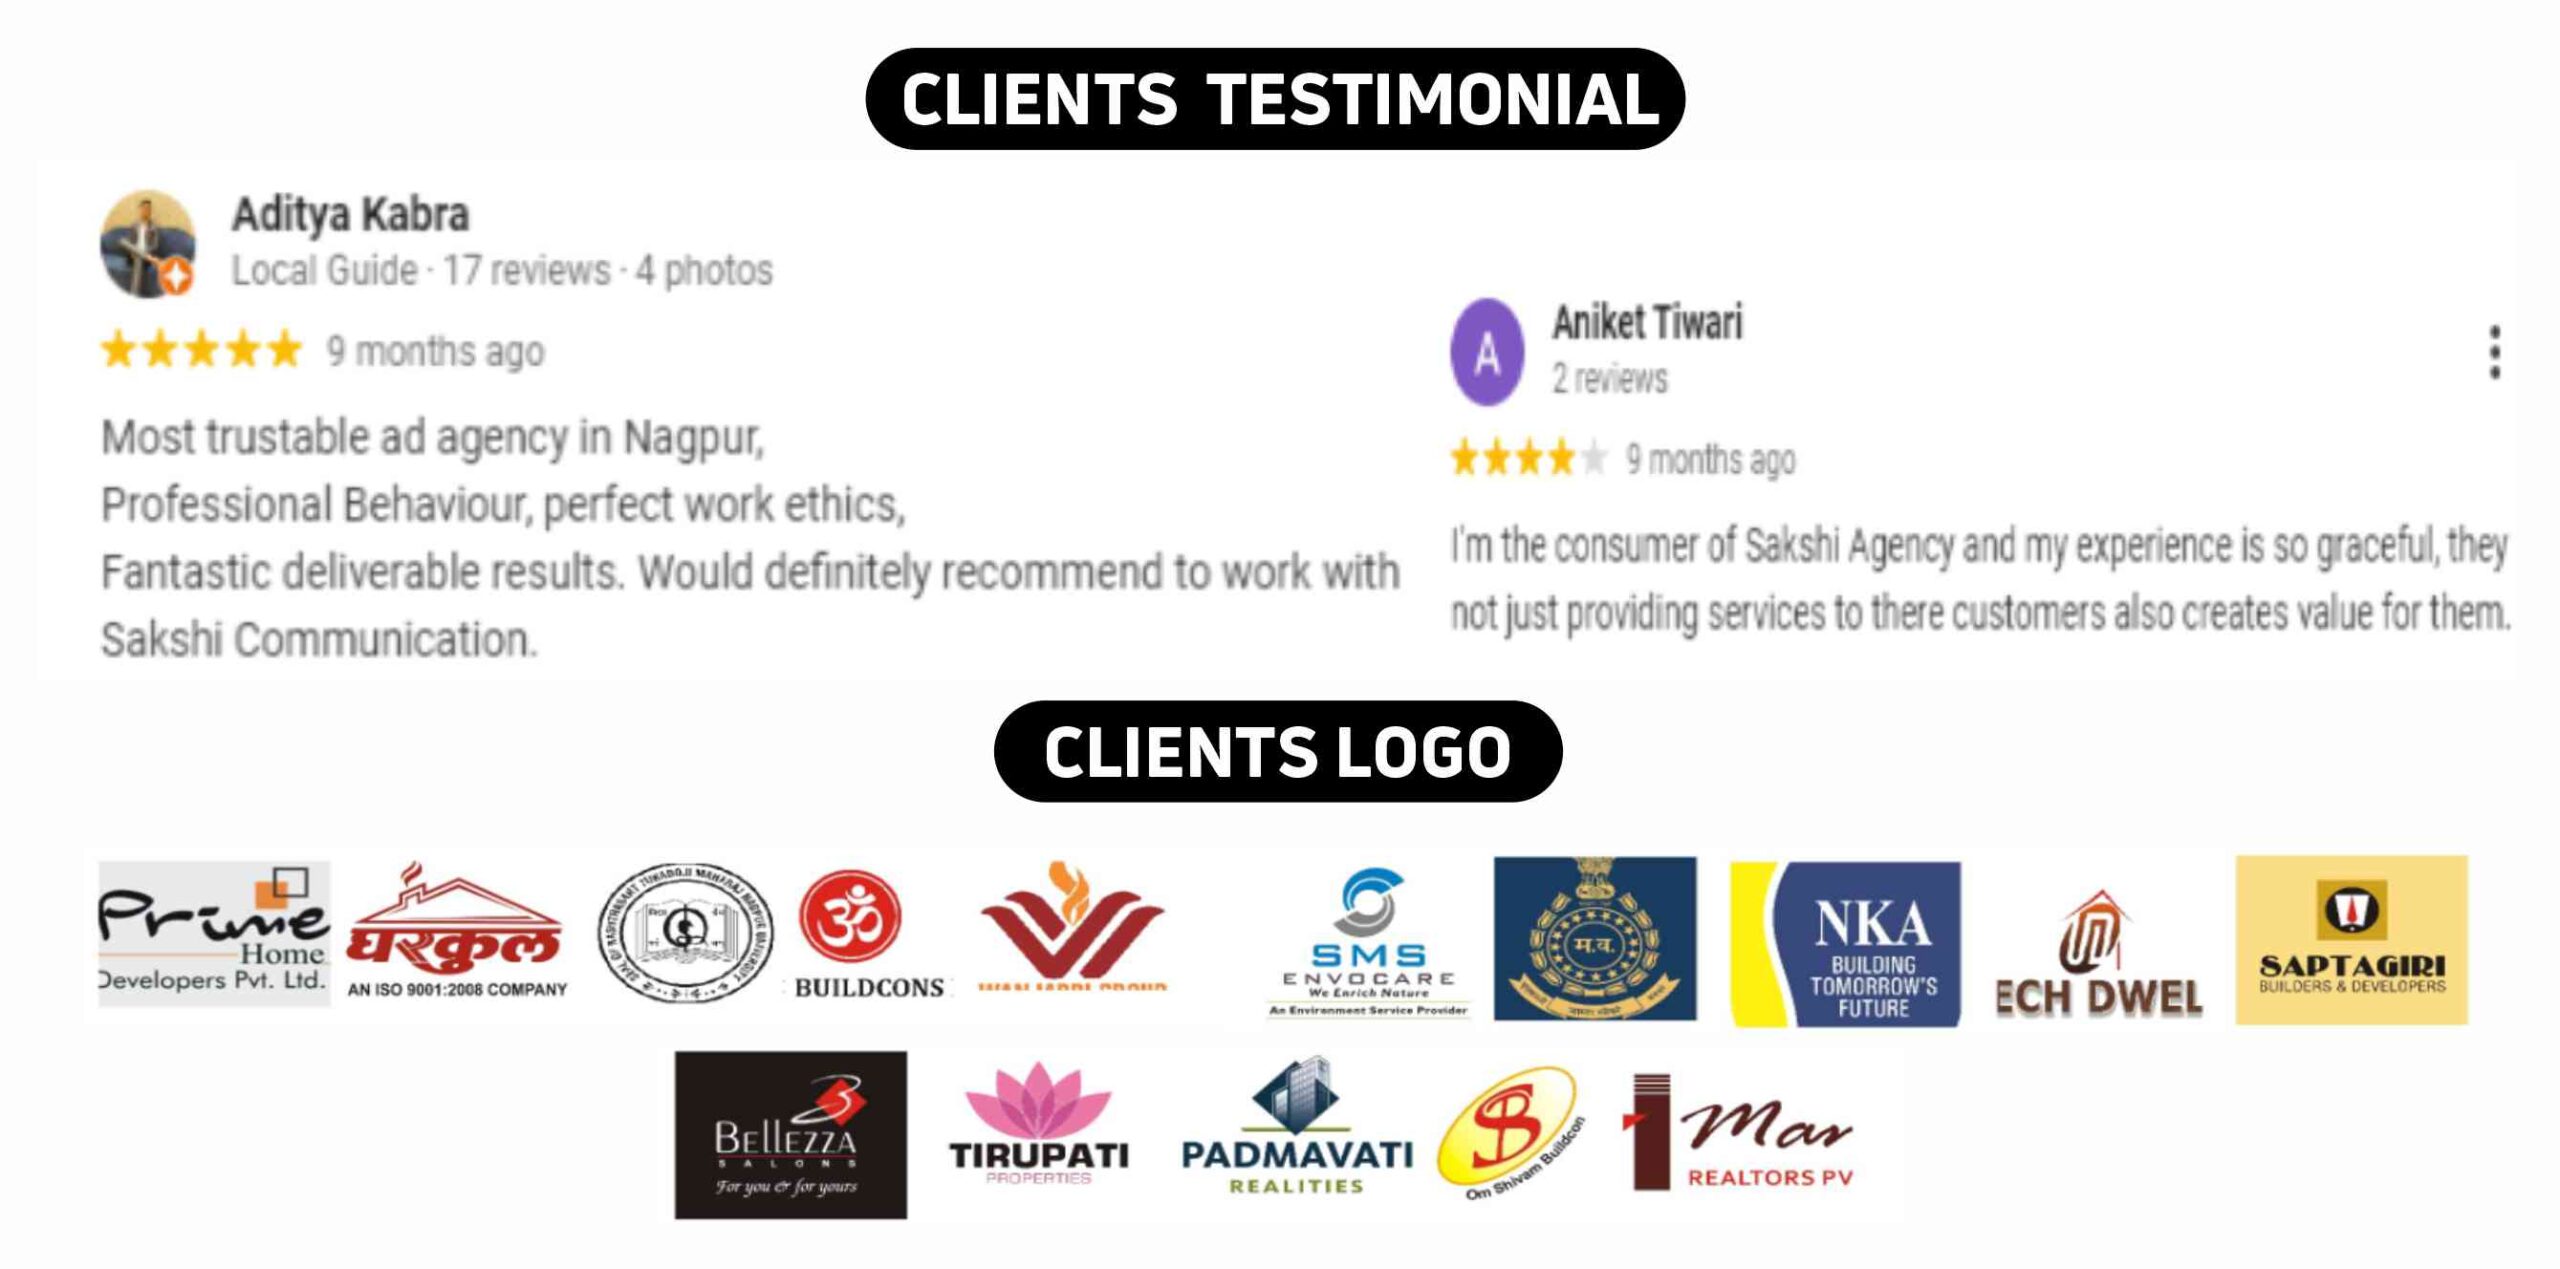 Sakshi Communication Client Testimonial & Logos